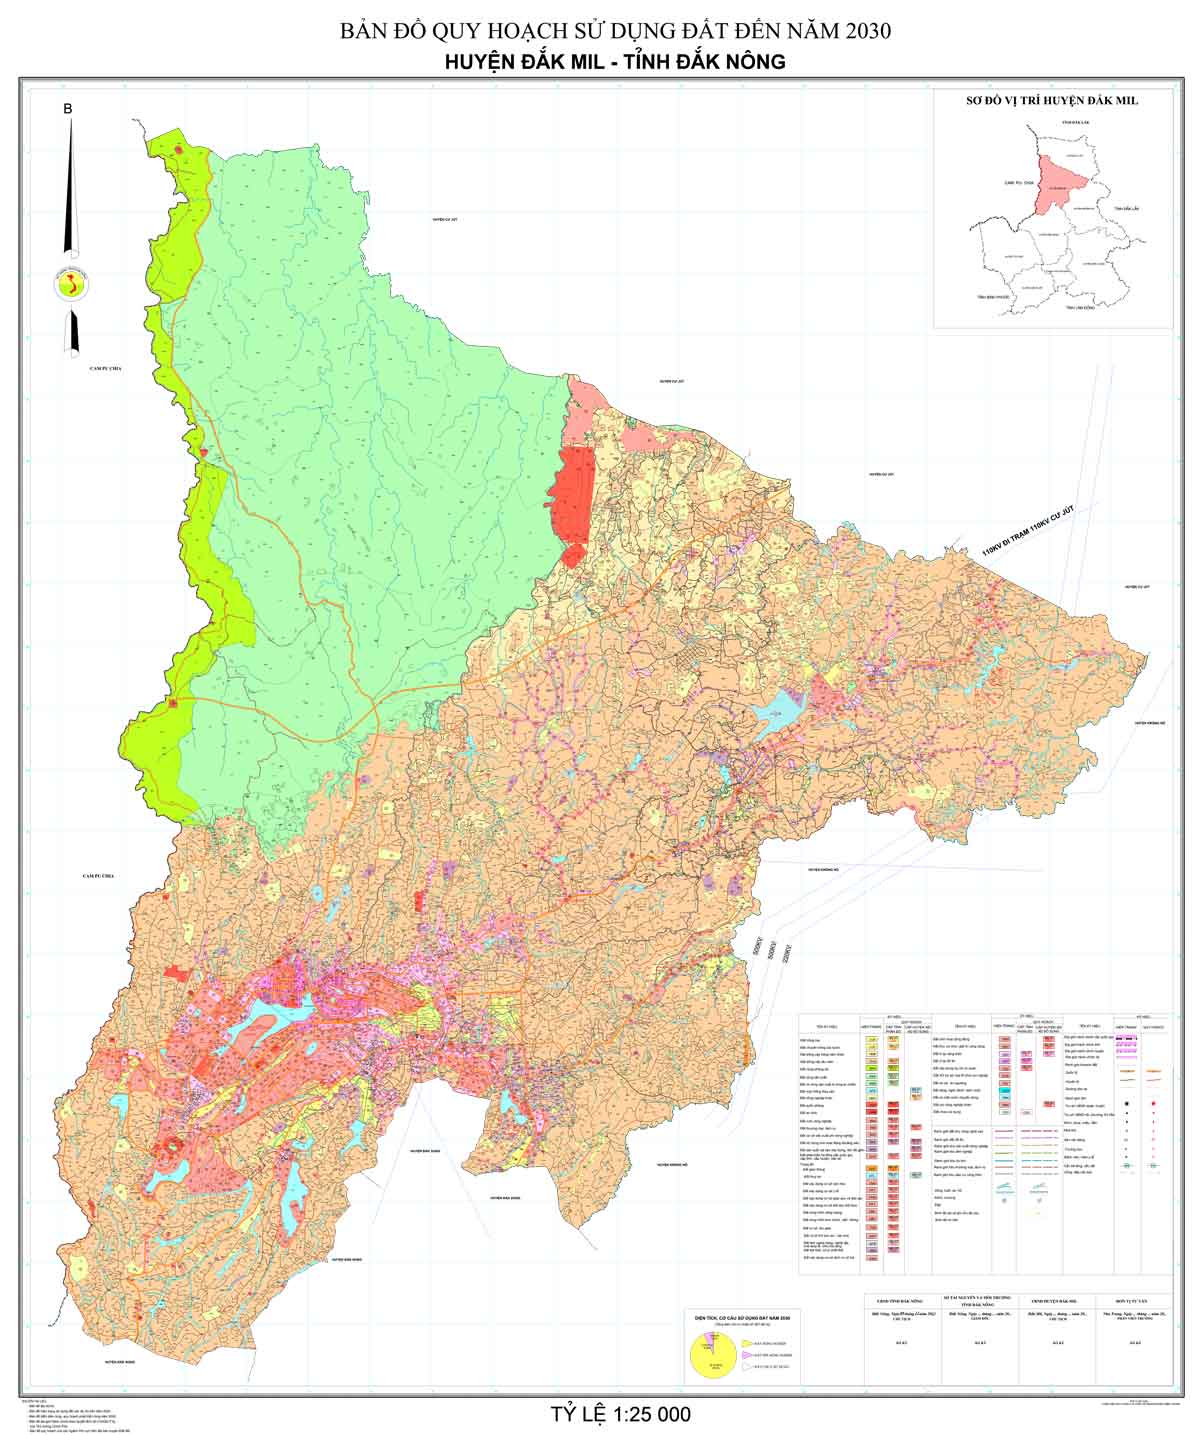 Bản đồ QHSDĐ huyện Đắk Mil đến năm 2030